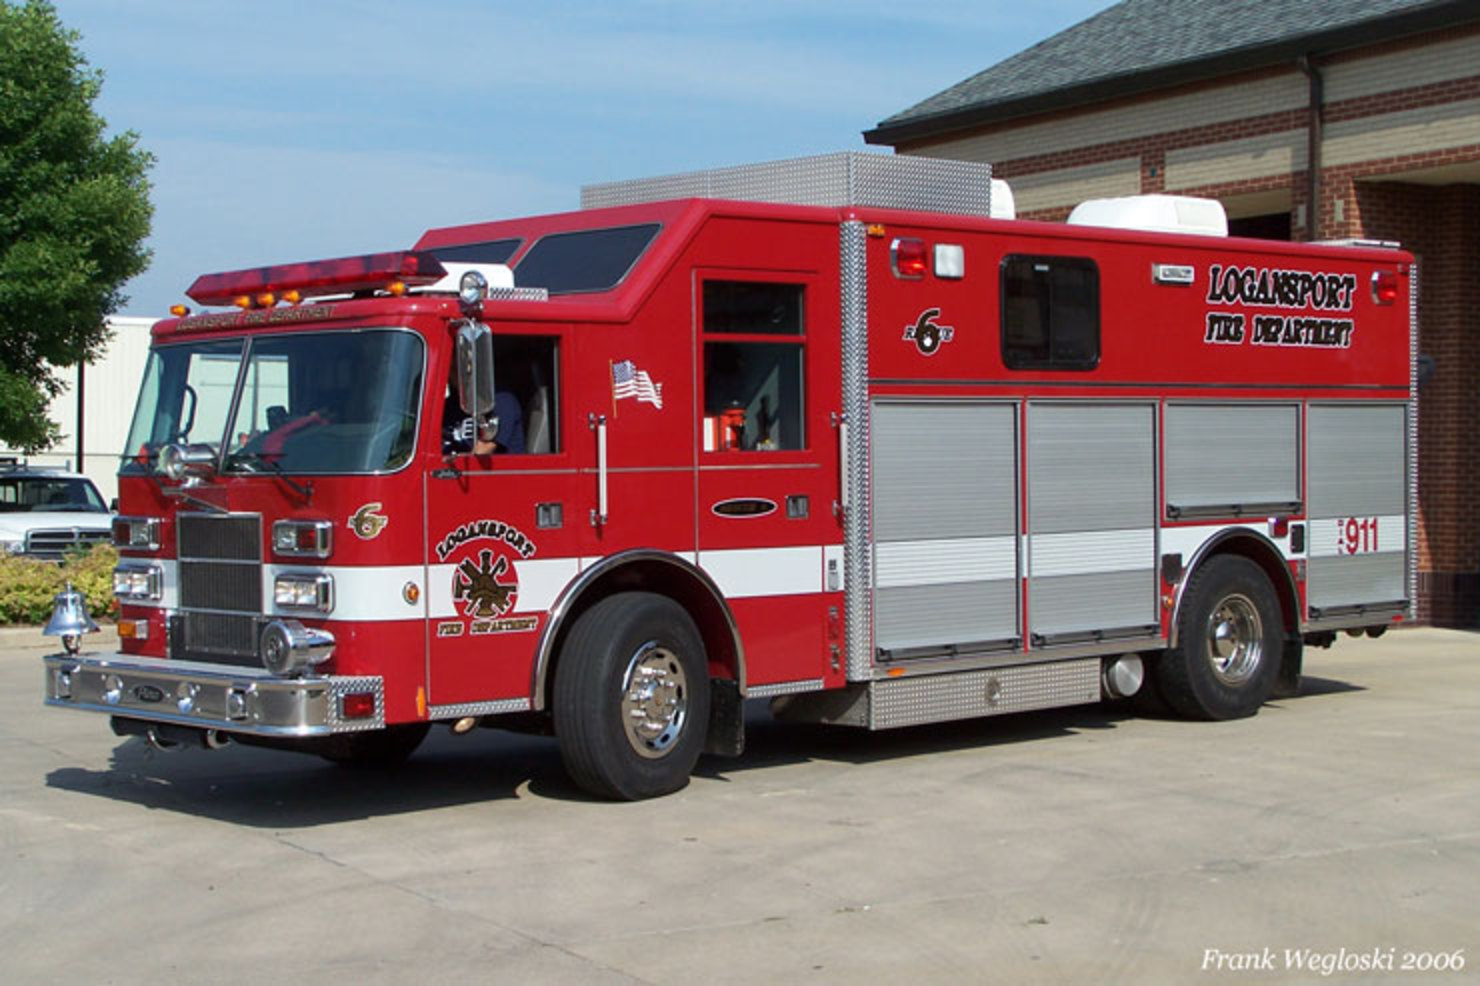 Indiana Fire Trucks: Logansport Fire Department